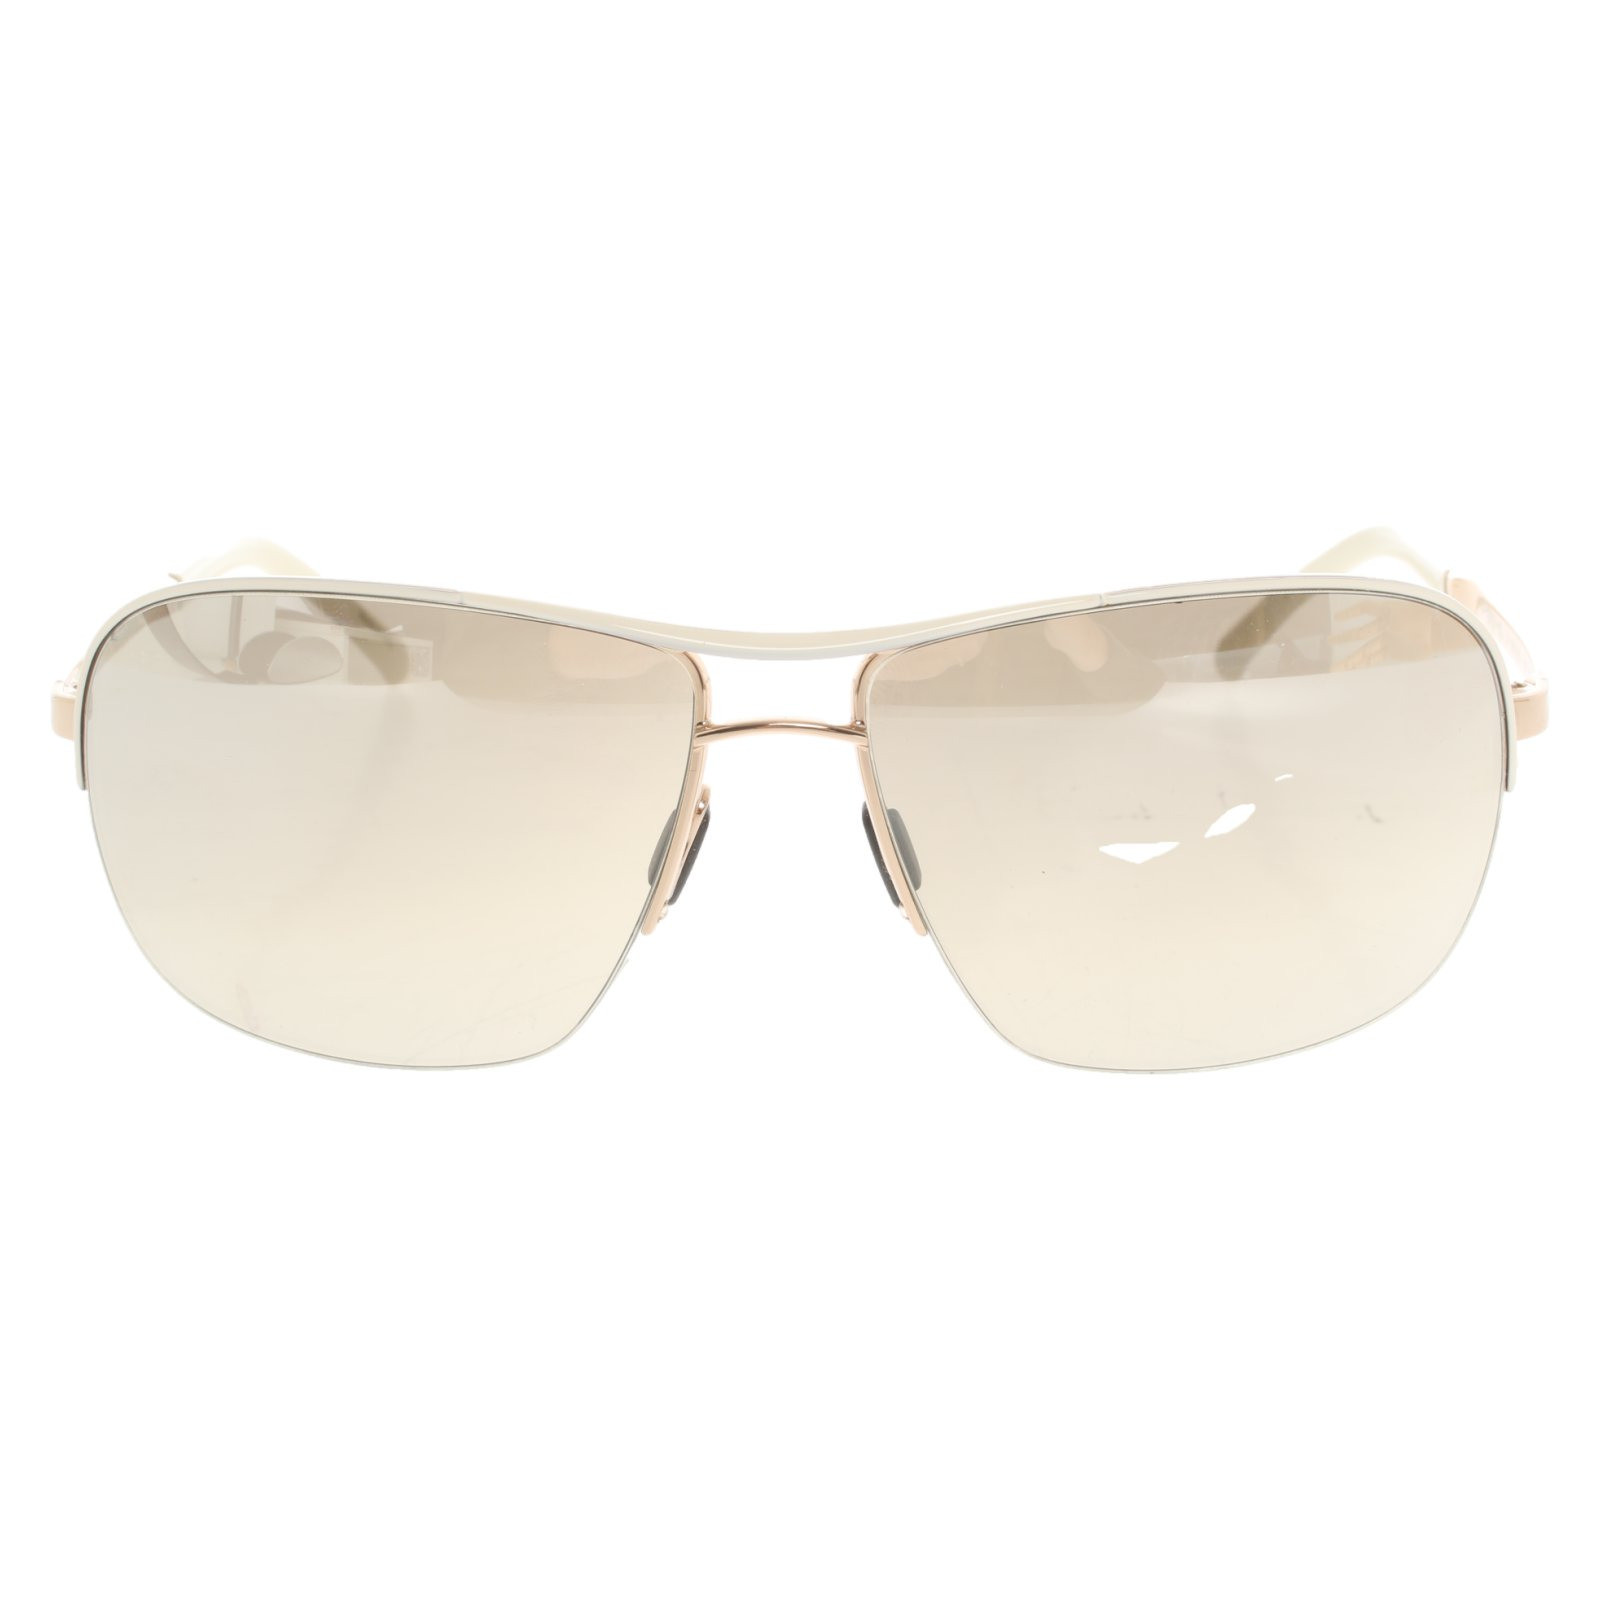 Porsche Design Sunglasses In Cream Second Hand Porsche Design Sunglasses In Cream Buy Used For 159